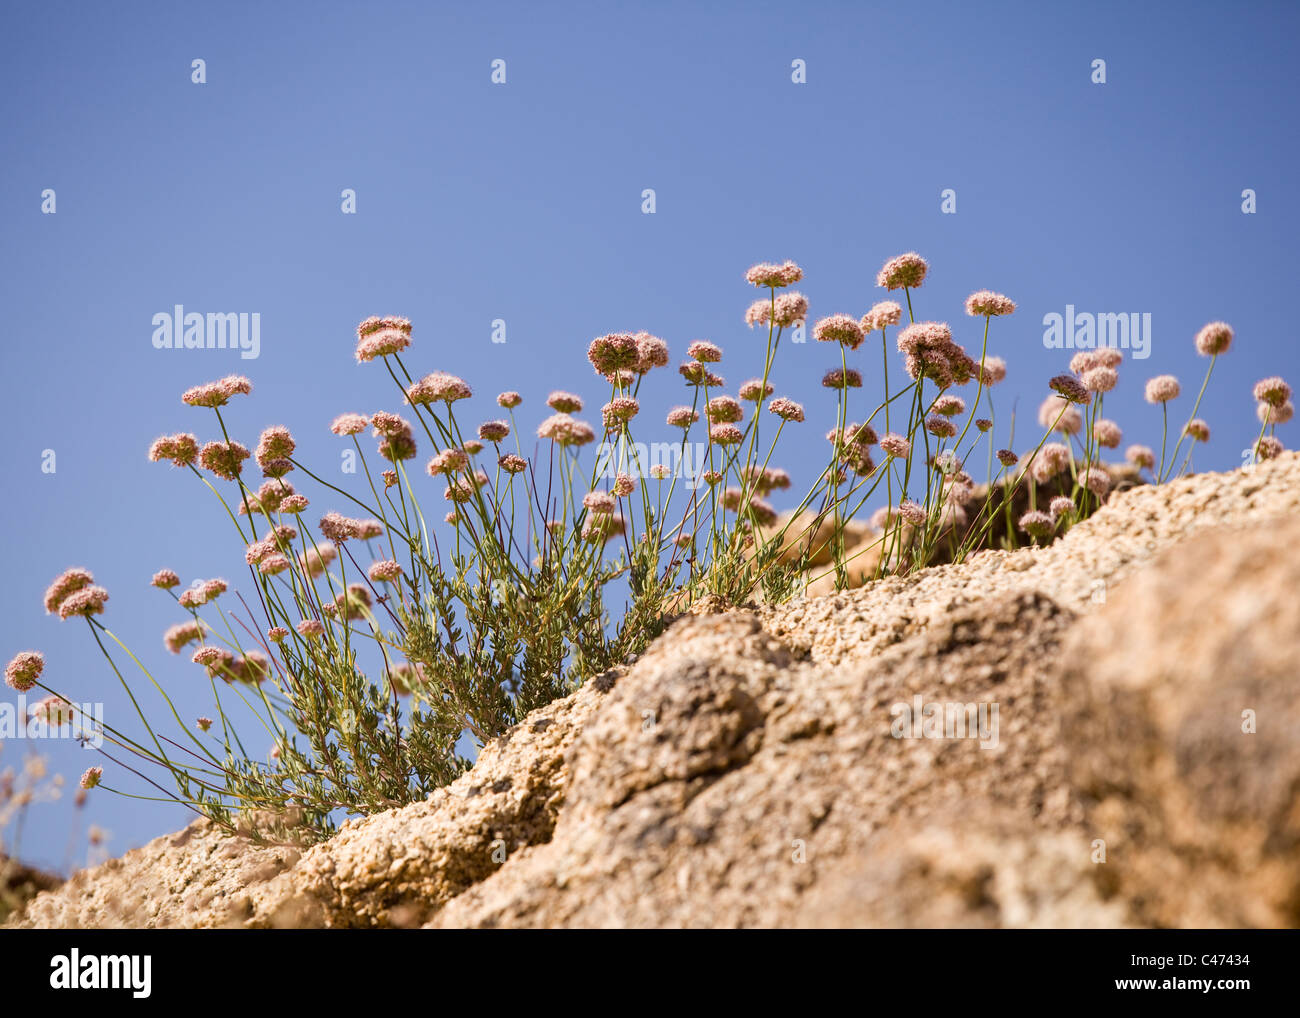 Californie le sarrasin (Eriogonum fasciculatum) poussant dans le désert de Mojave - Californie, États-Unis Banque D'Images